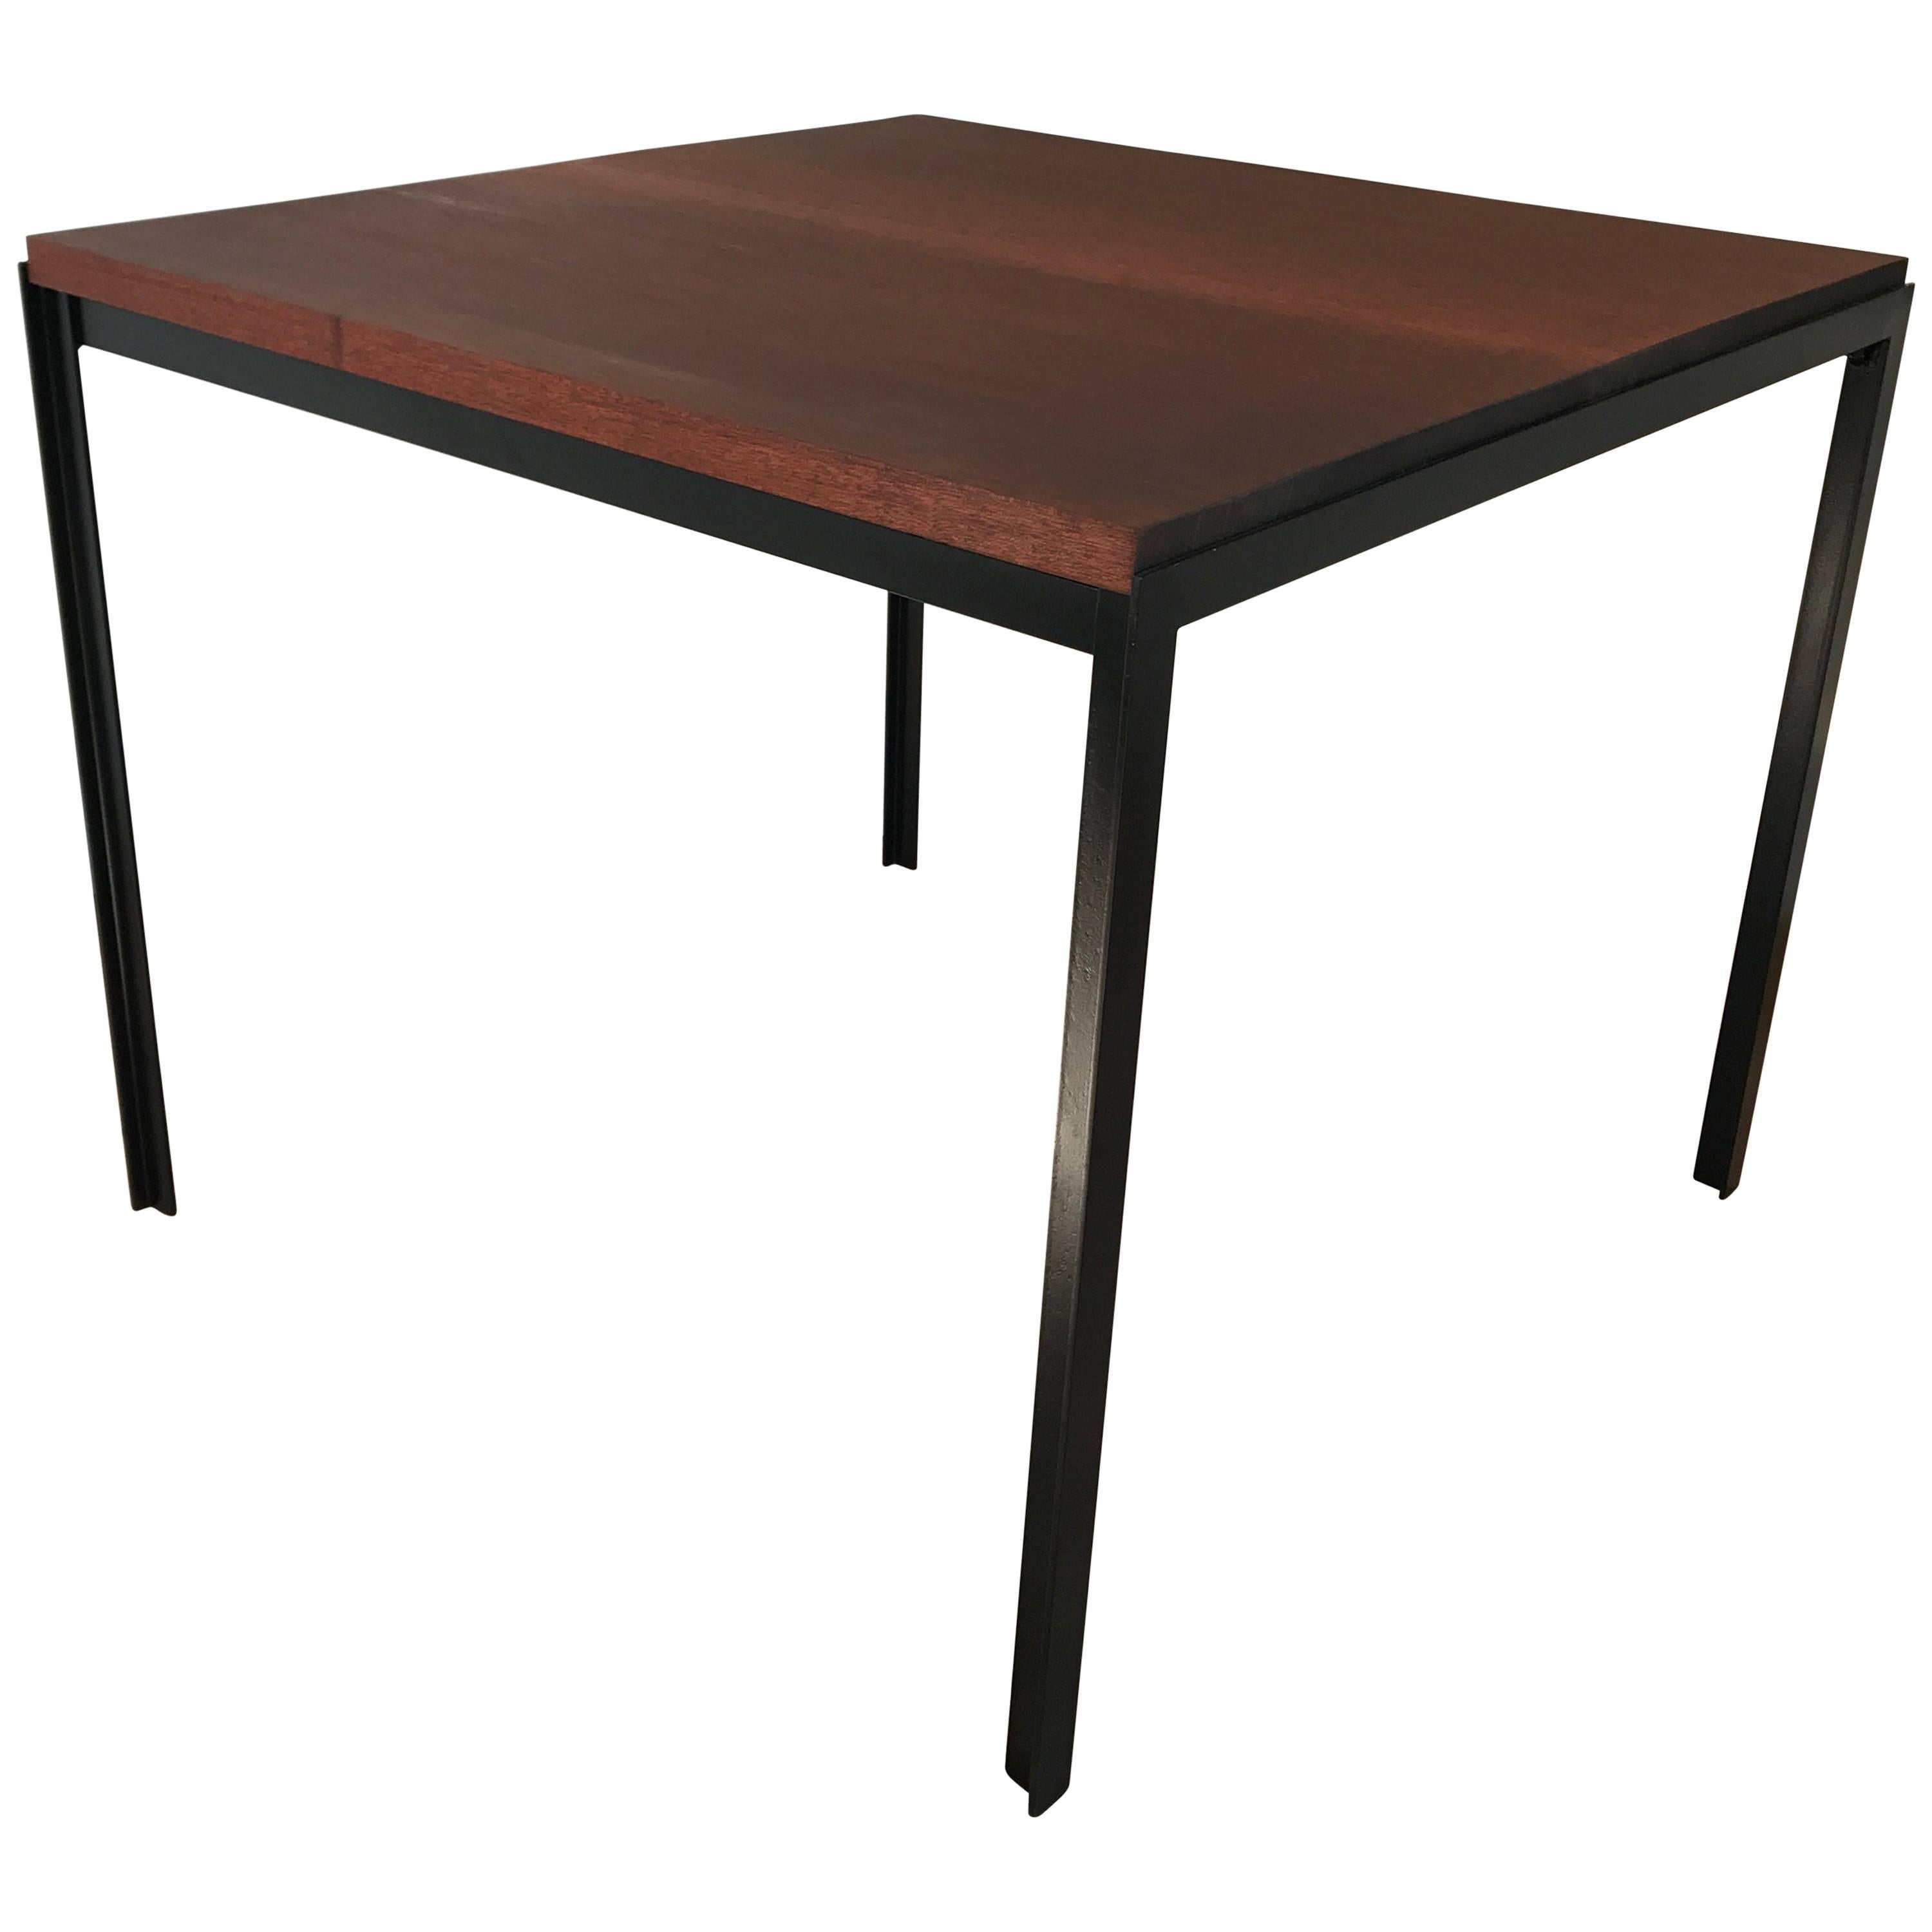 Quadratischer T-Tisch von Florence Knoll mit Eisengestell und Mahagoni-Platte. Die neu bearbeitete Platte ist für den Einsatz im Innen- und Außenbereich geeignet.